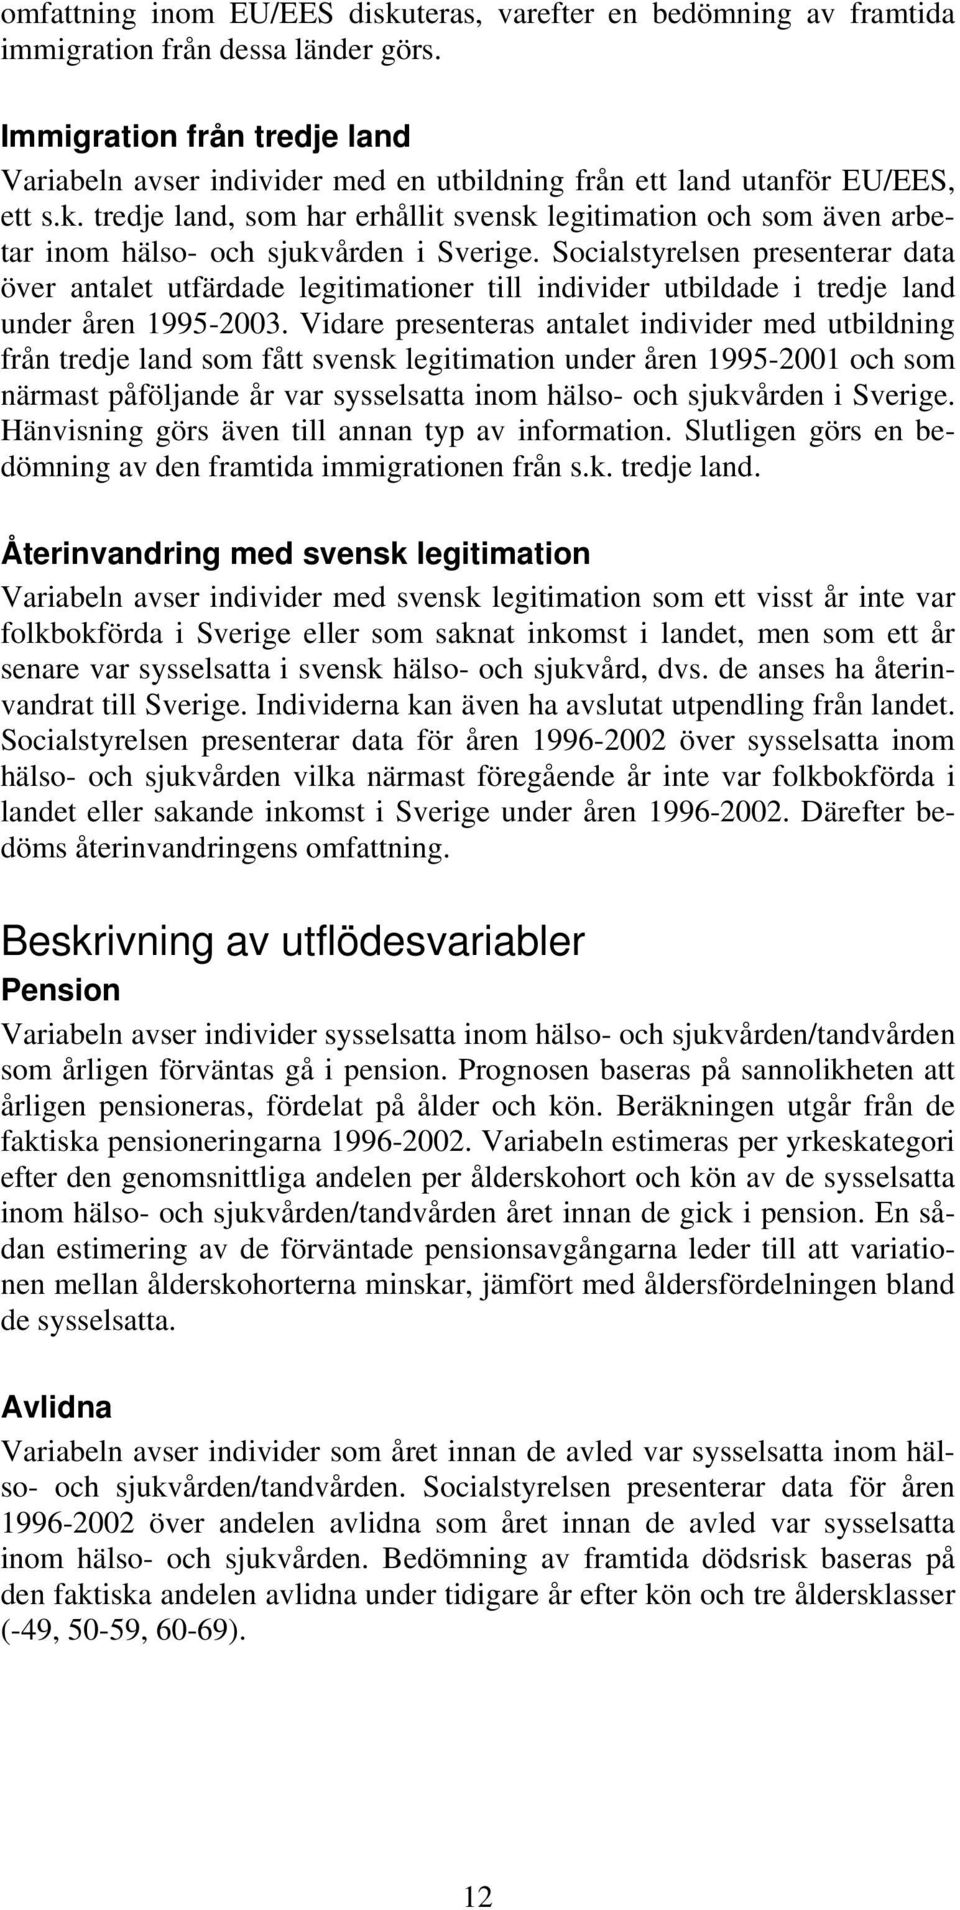 tredje land, som har erhållit svensk legitimation och som även arbetar inom hälso- och sjukvården i Sverige.